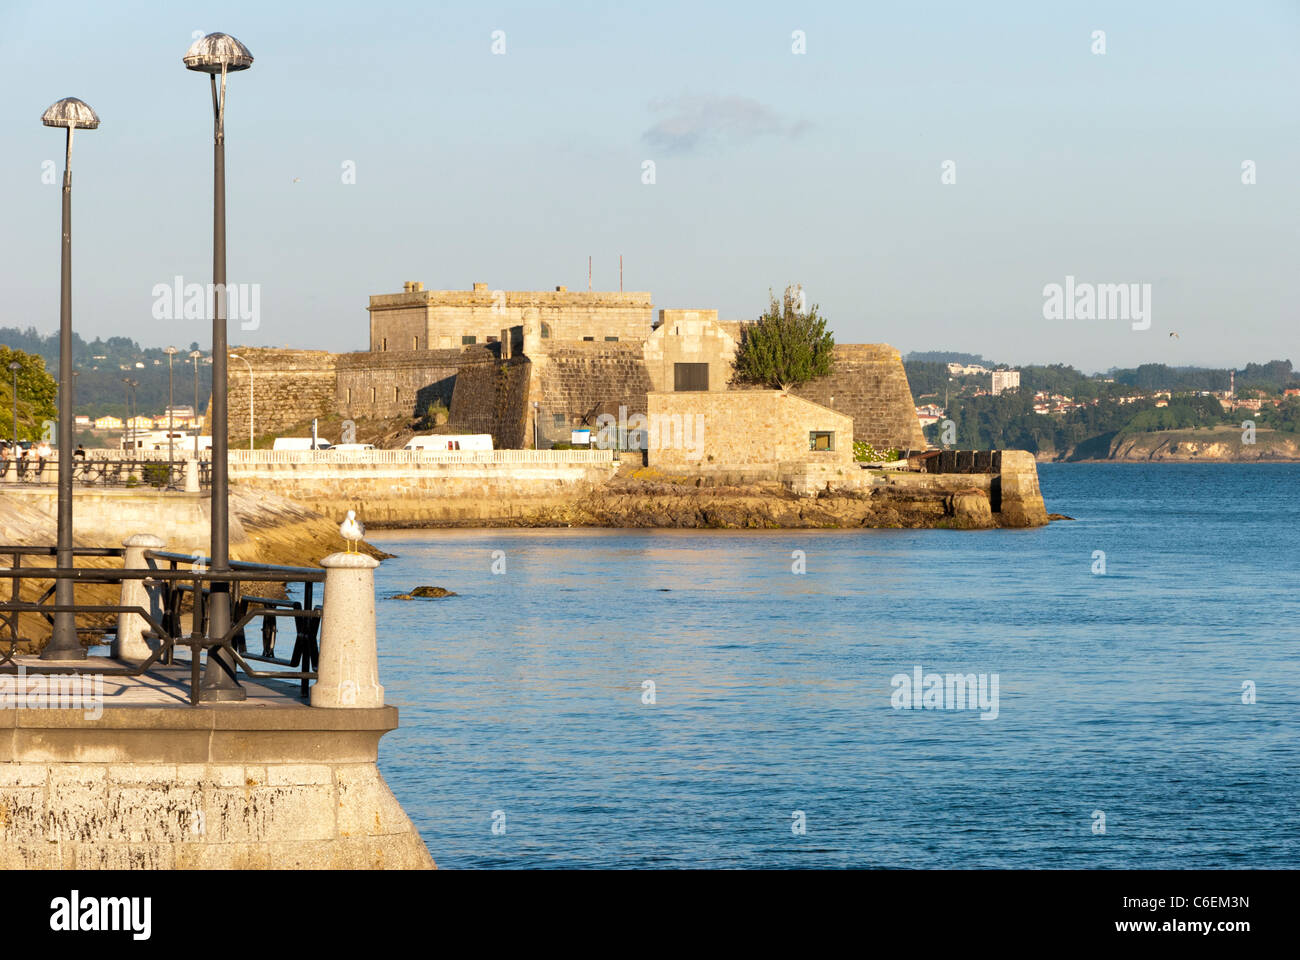 Schloss von San Antón - Festung, erbaut zwischen dem 16. und 17. Jahrhundert auf einer kleinen Insel in der Bucht von La Coruña, zur Verteidigung der Stadt gegen Angriffe aus dem Meer kommen. Während des englischen Angriffs von Francis Drake im Jahre 1589 diente das Schloss wirksam, die Einfahrt in die Stadt zu verteidigen.  Toda Stockfoto